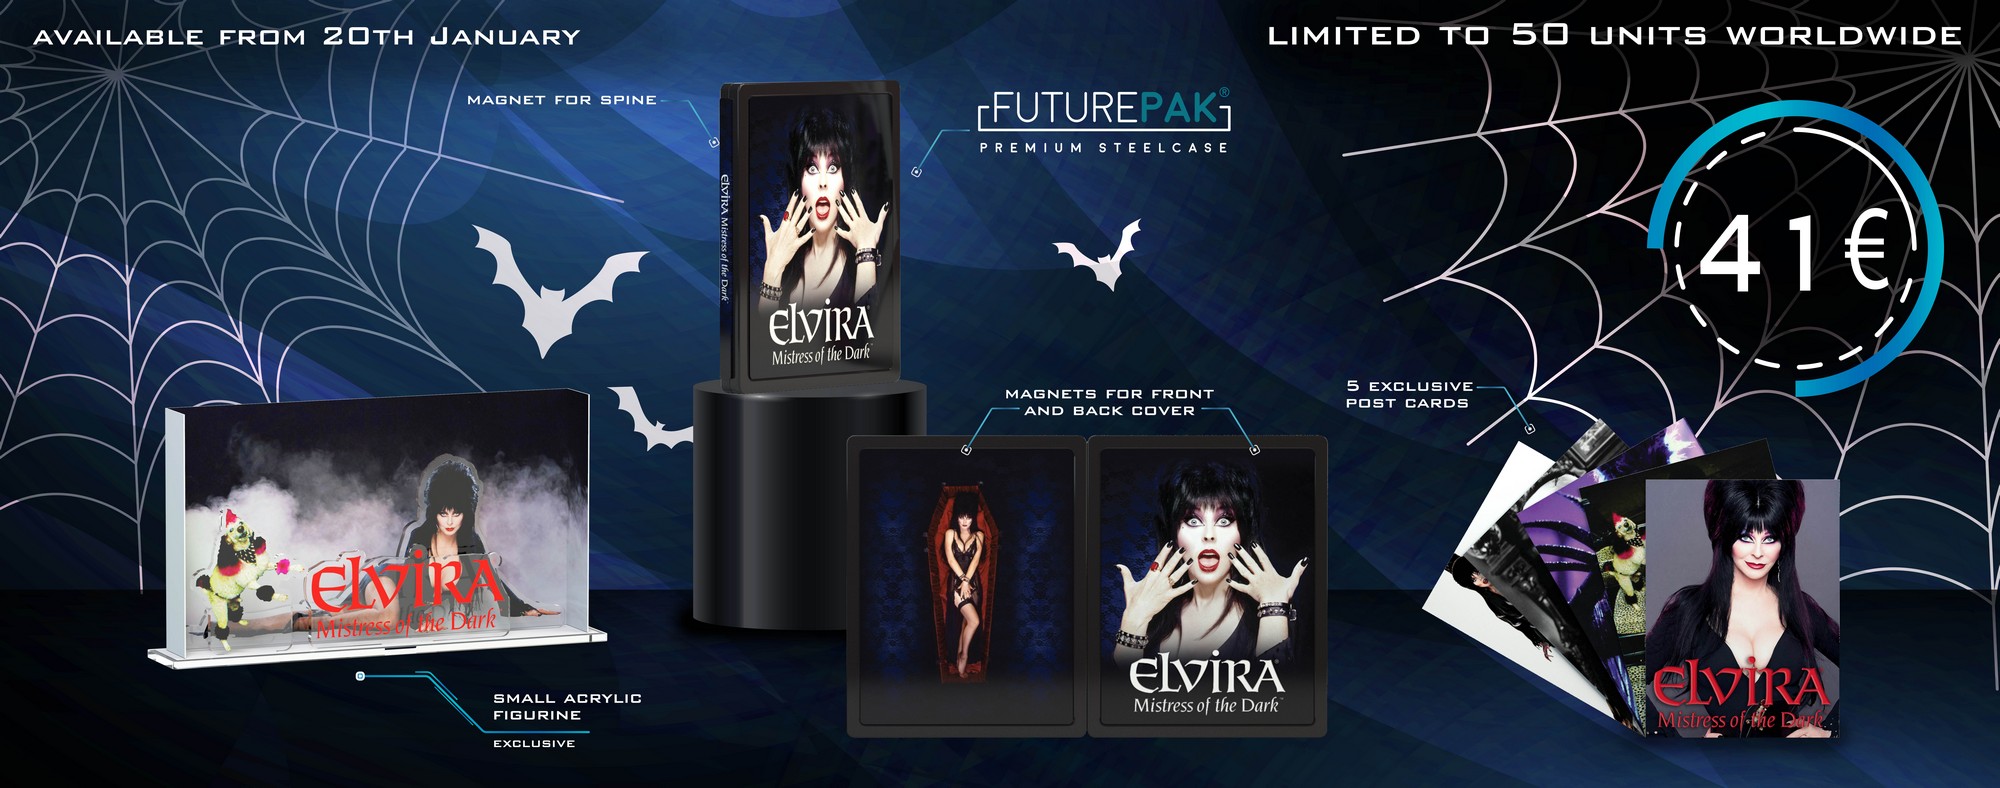 Elvira-5-picture 5